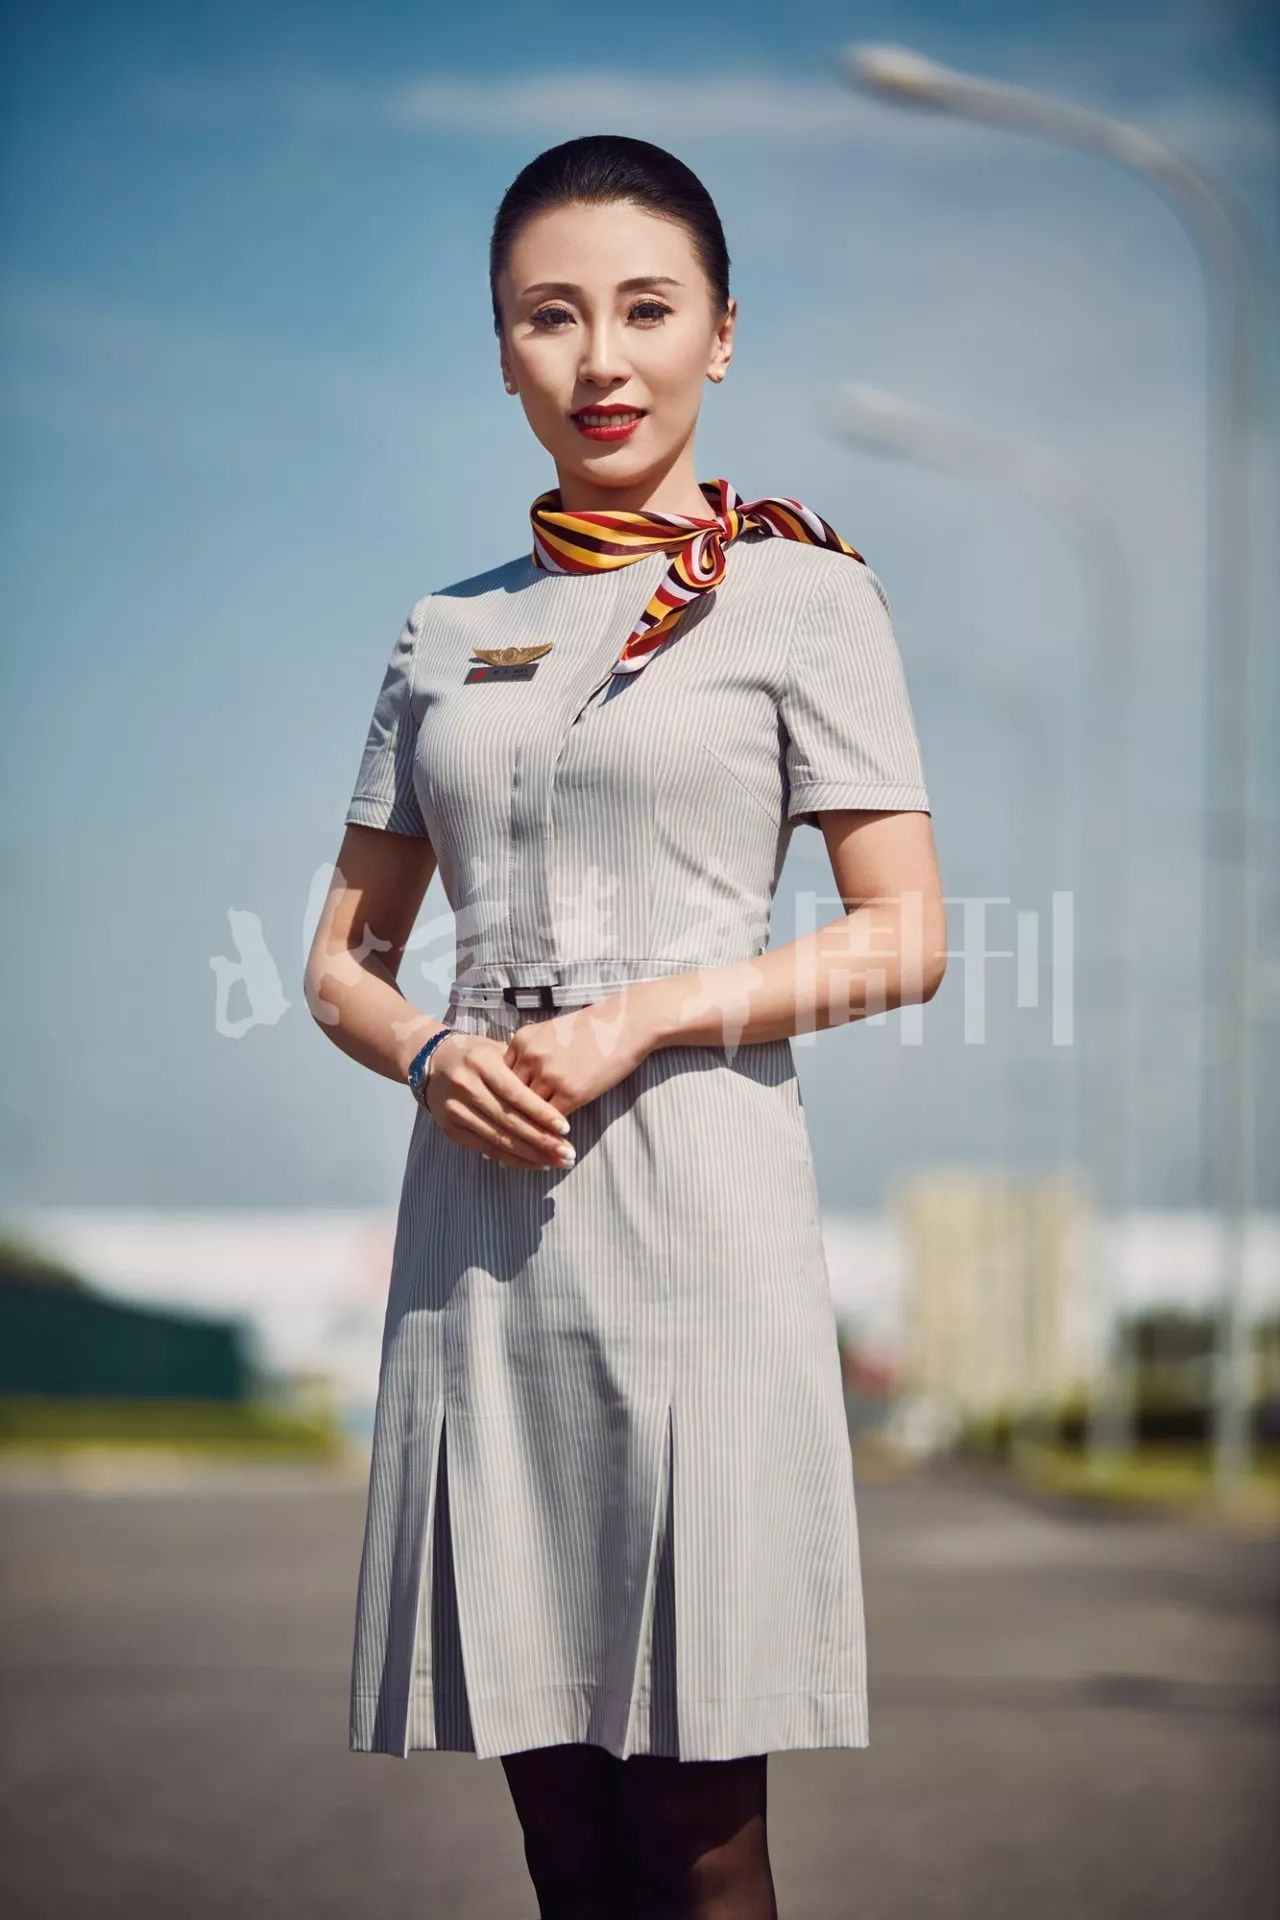 北京首都国际机场空姐图片